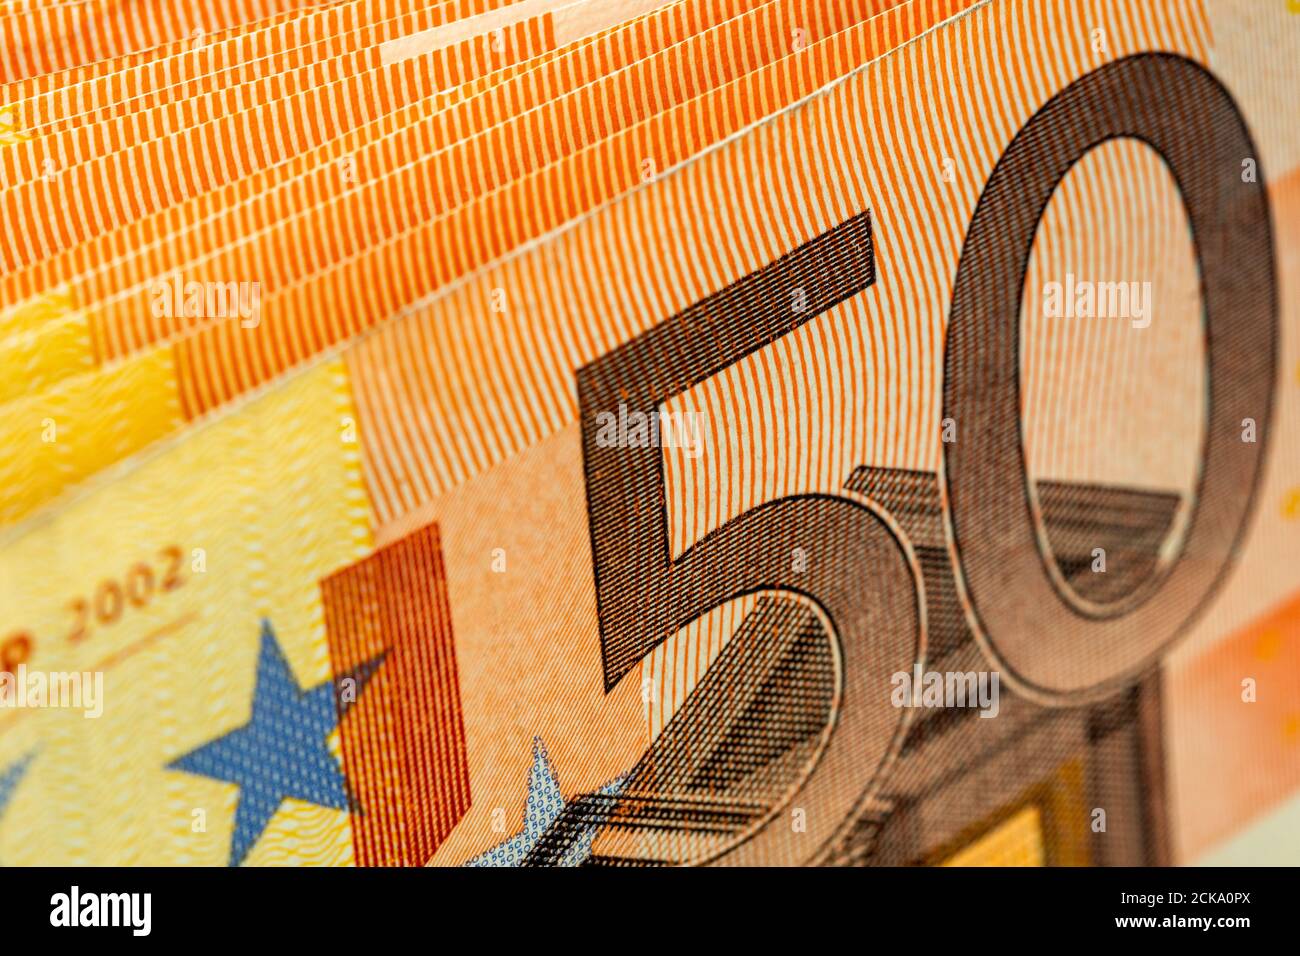 Nahaufnahme der riesigen Menge von 50 Euro-Banknoten. Selektiver Fokus, flacher Freiheitsgrad. Stockfoto